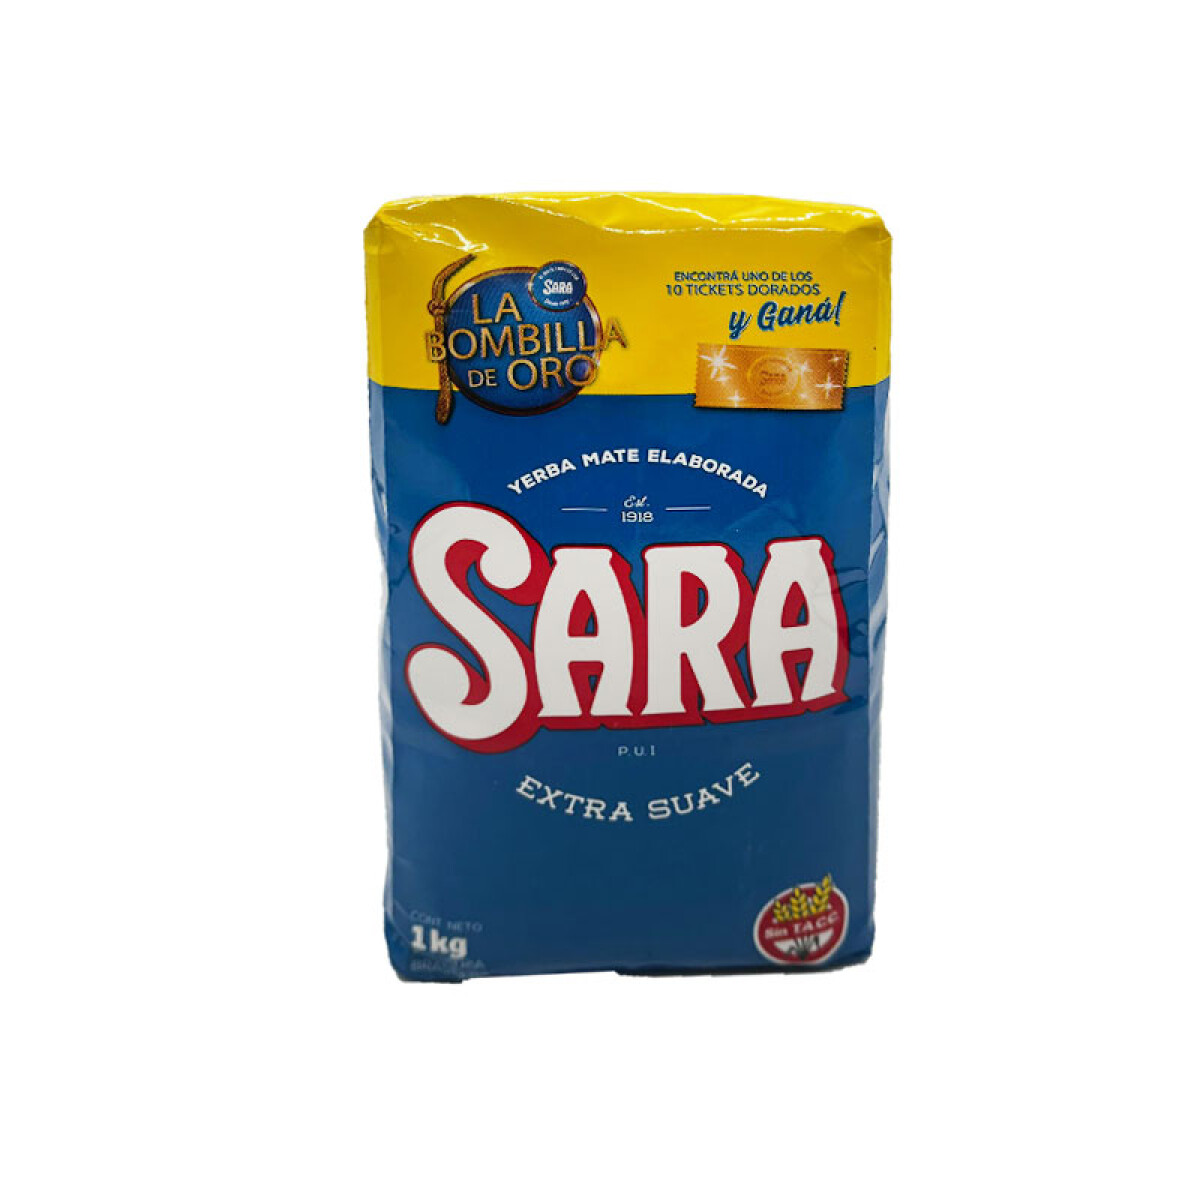 Yerba SARA 1kg extra suave 